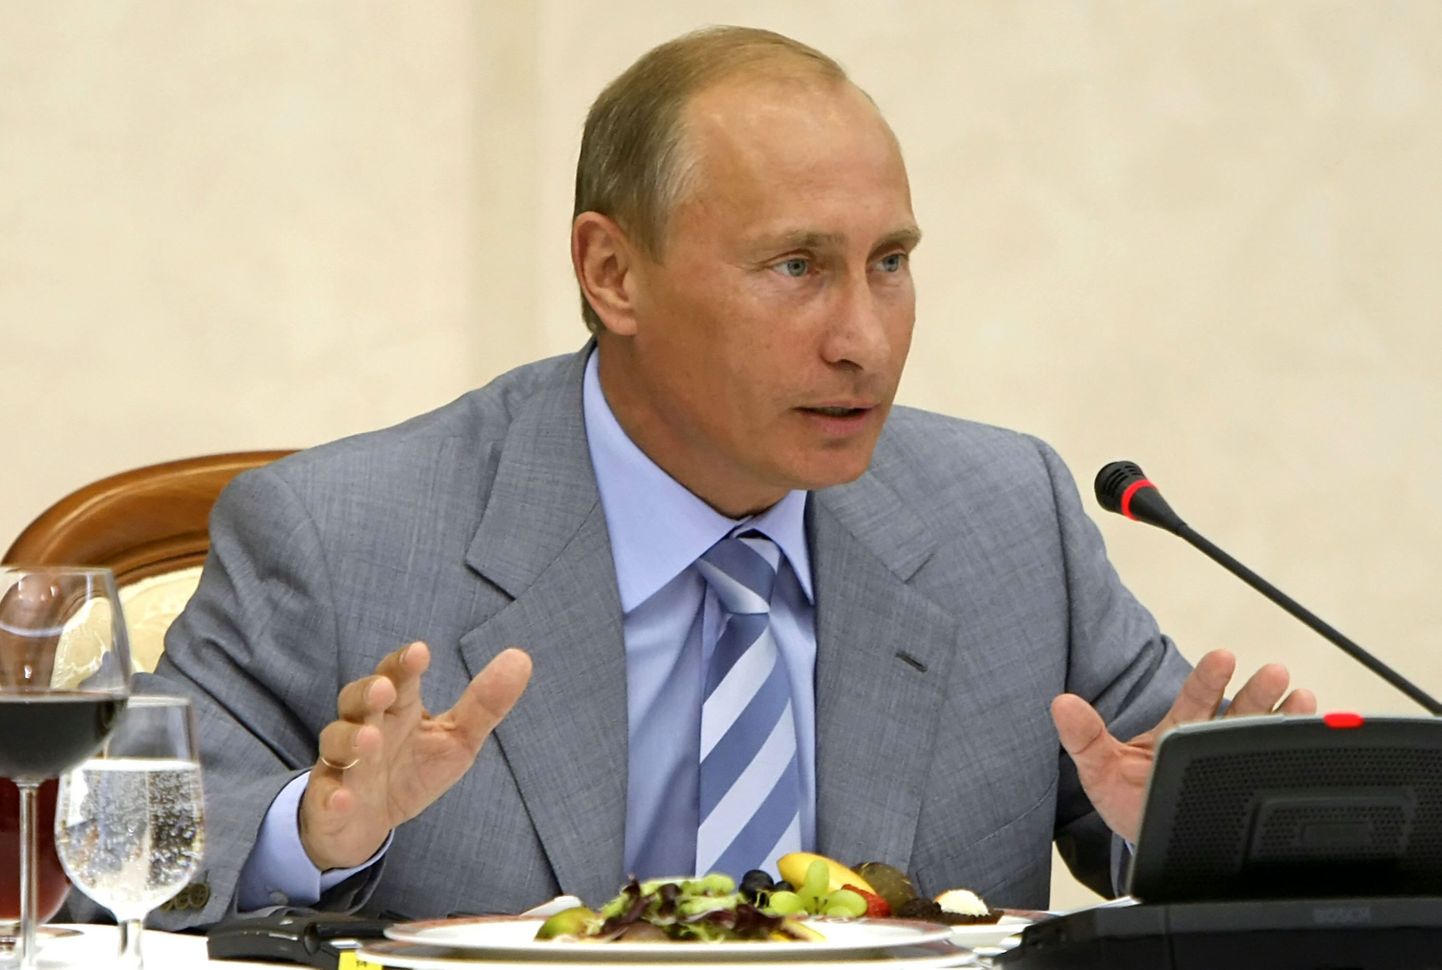 Venemaa peaminister Vladimir Putin esinemas Sotšis.